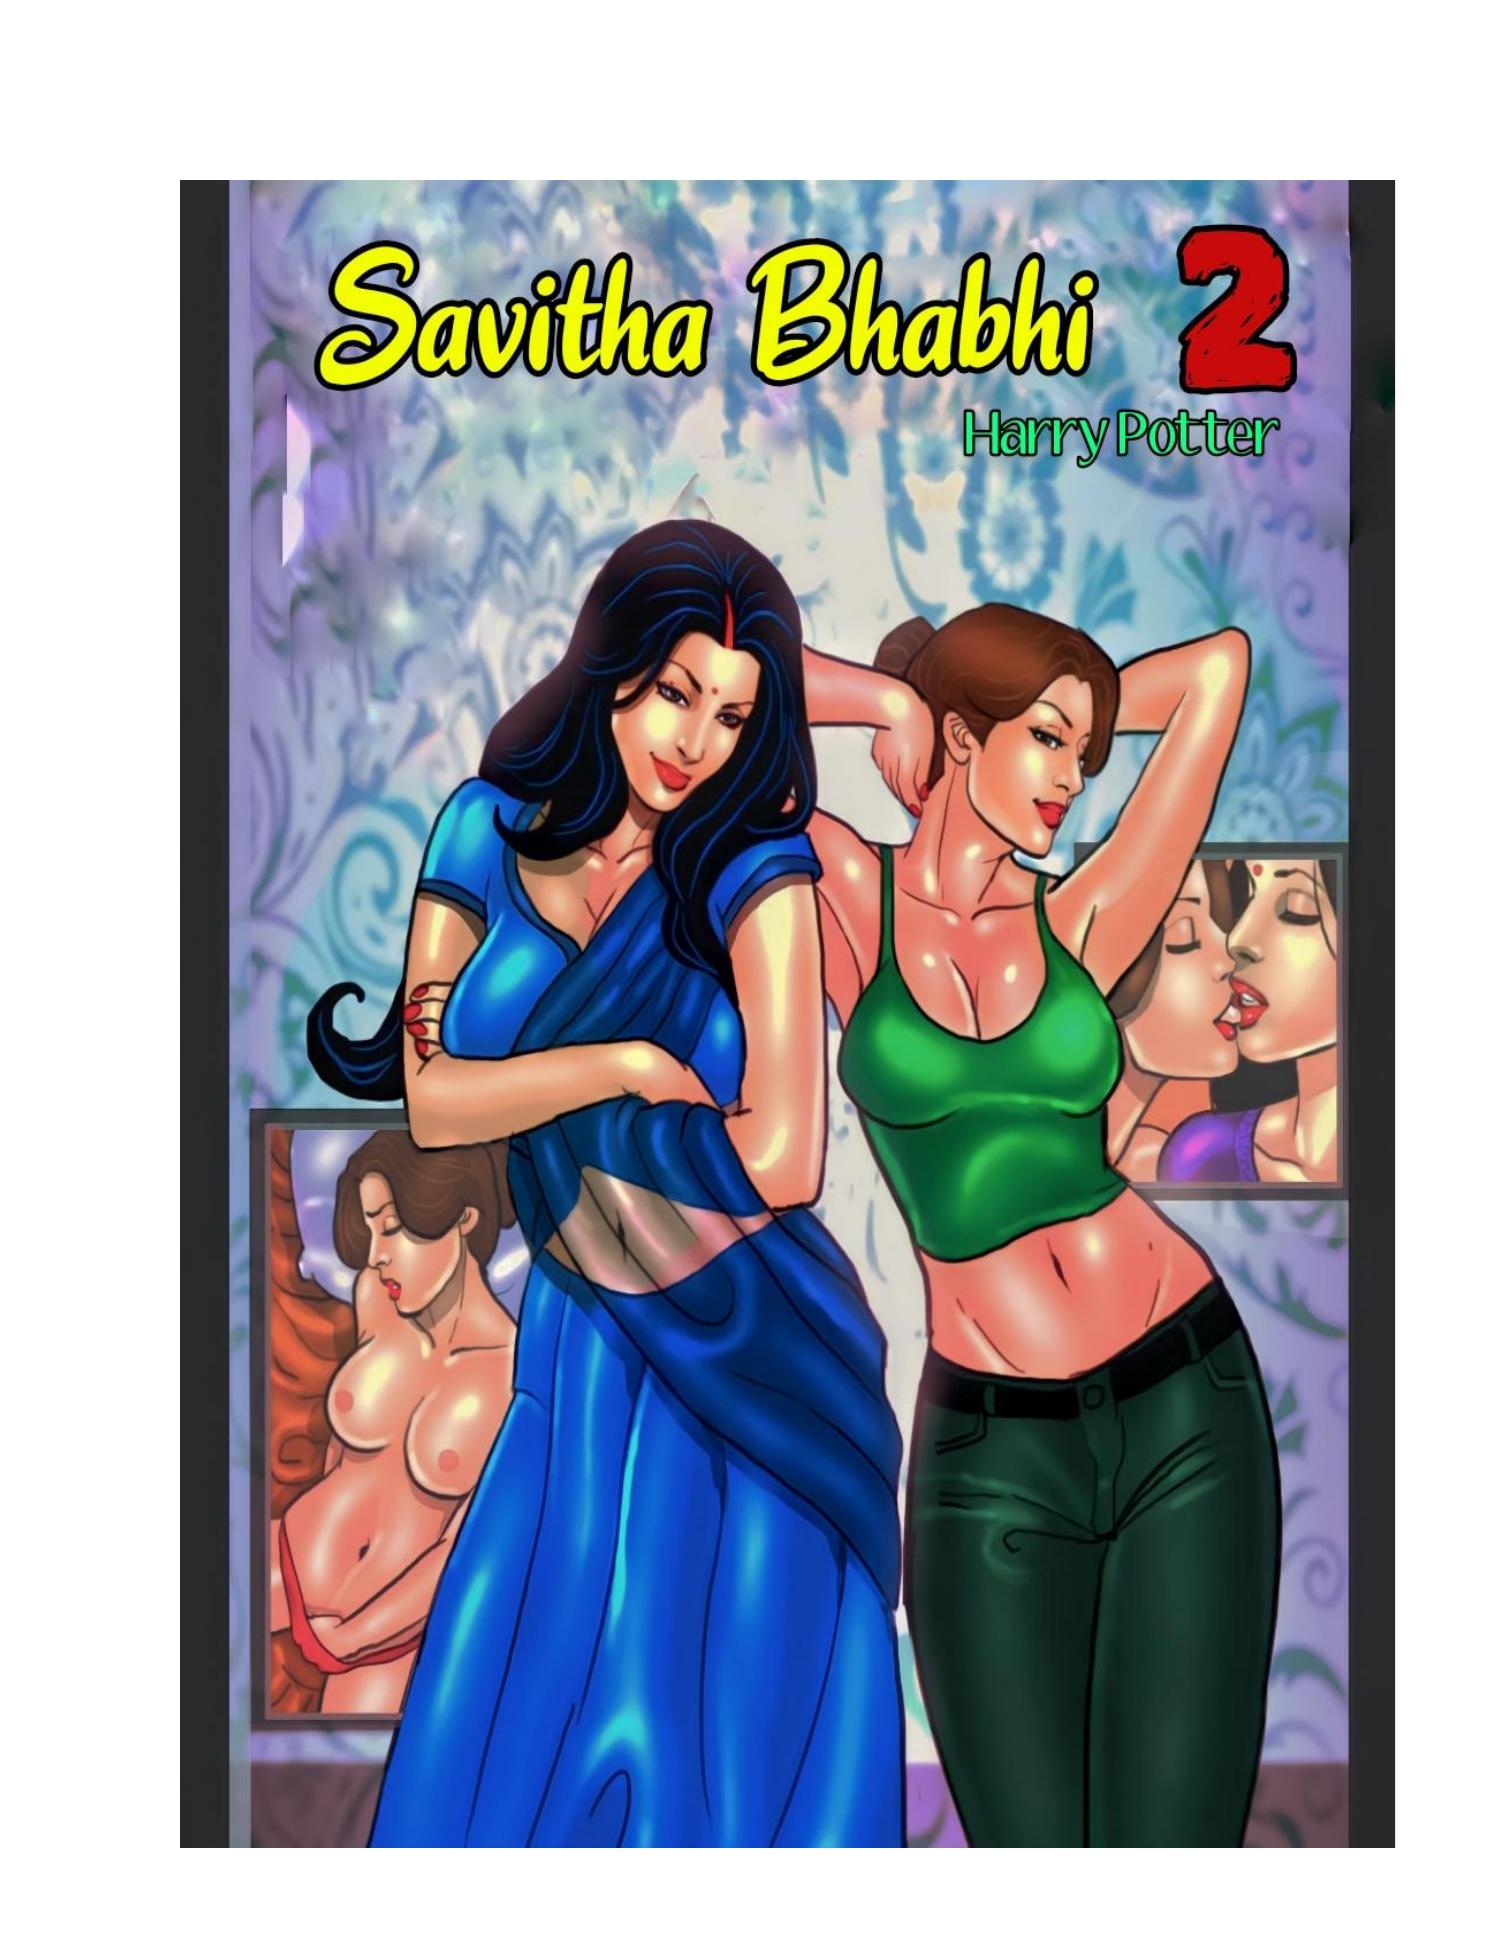 Savita babi pdf